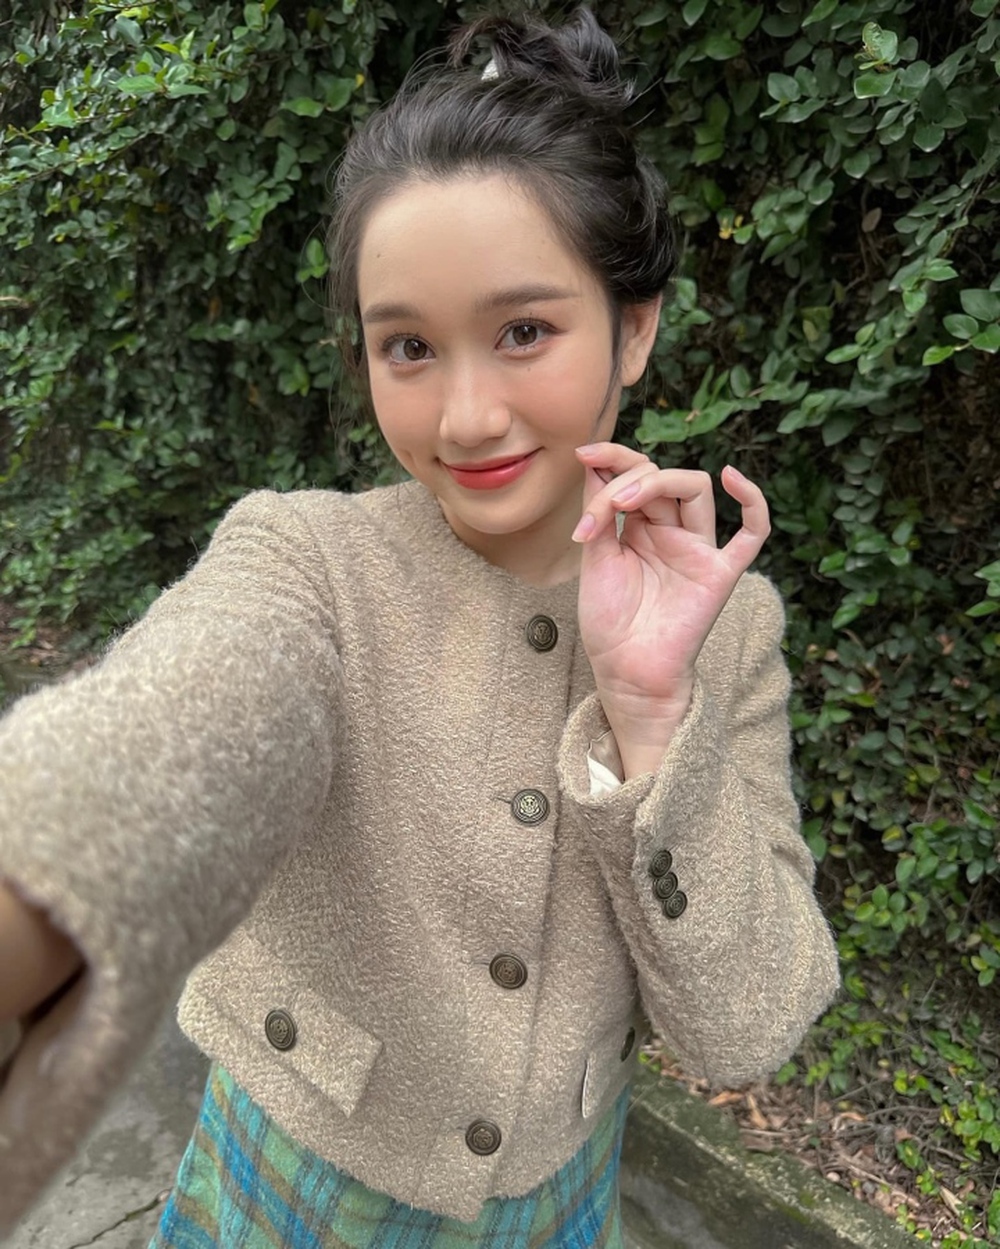 Sao Việt 25/11: Kiểu tóc mới giúp Diva Mỹ Linh trẻ đẹp ở tuổi 47 - Ảnh 7.